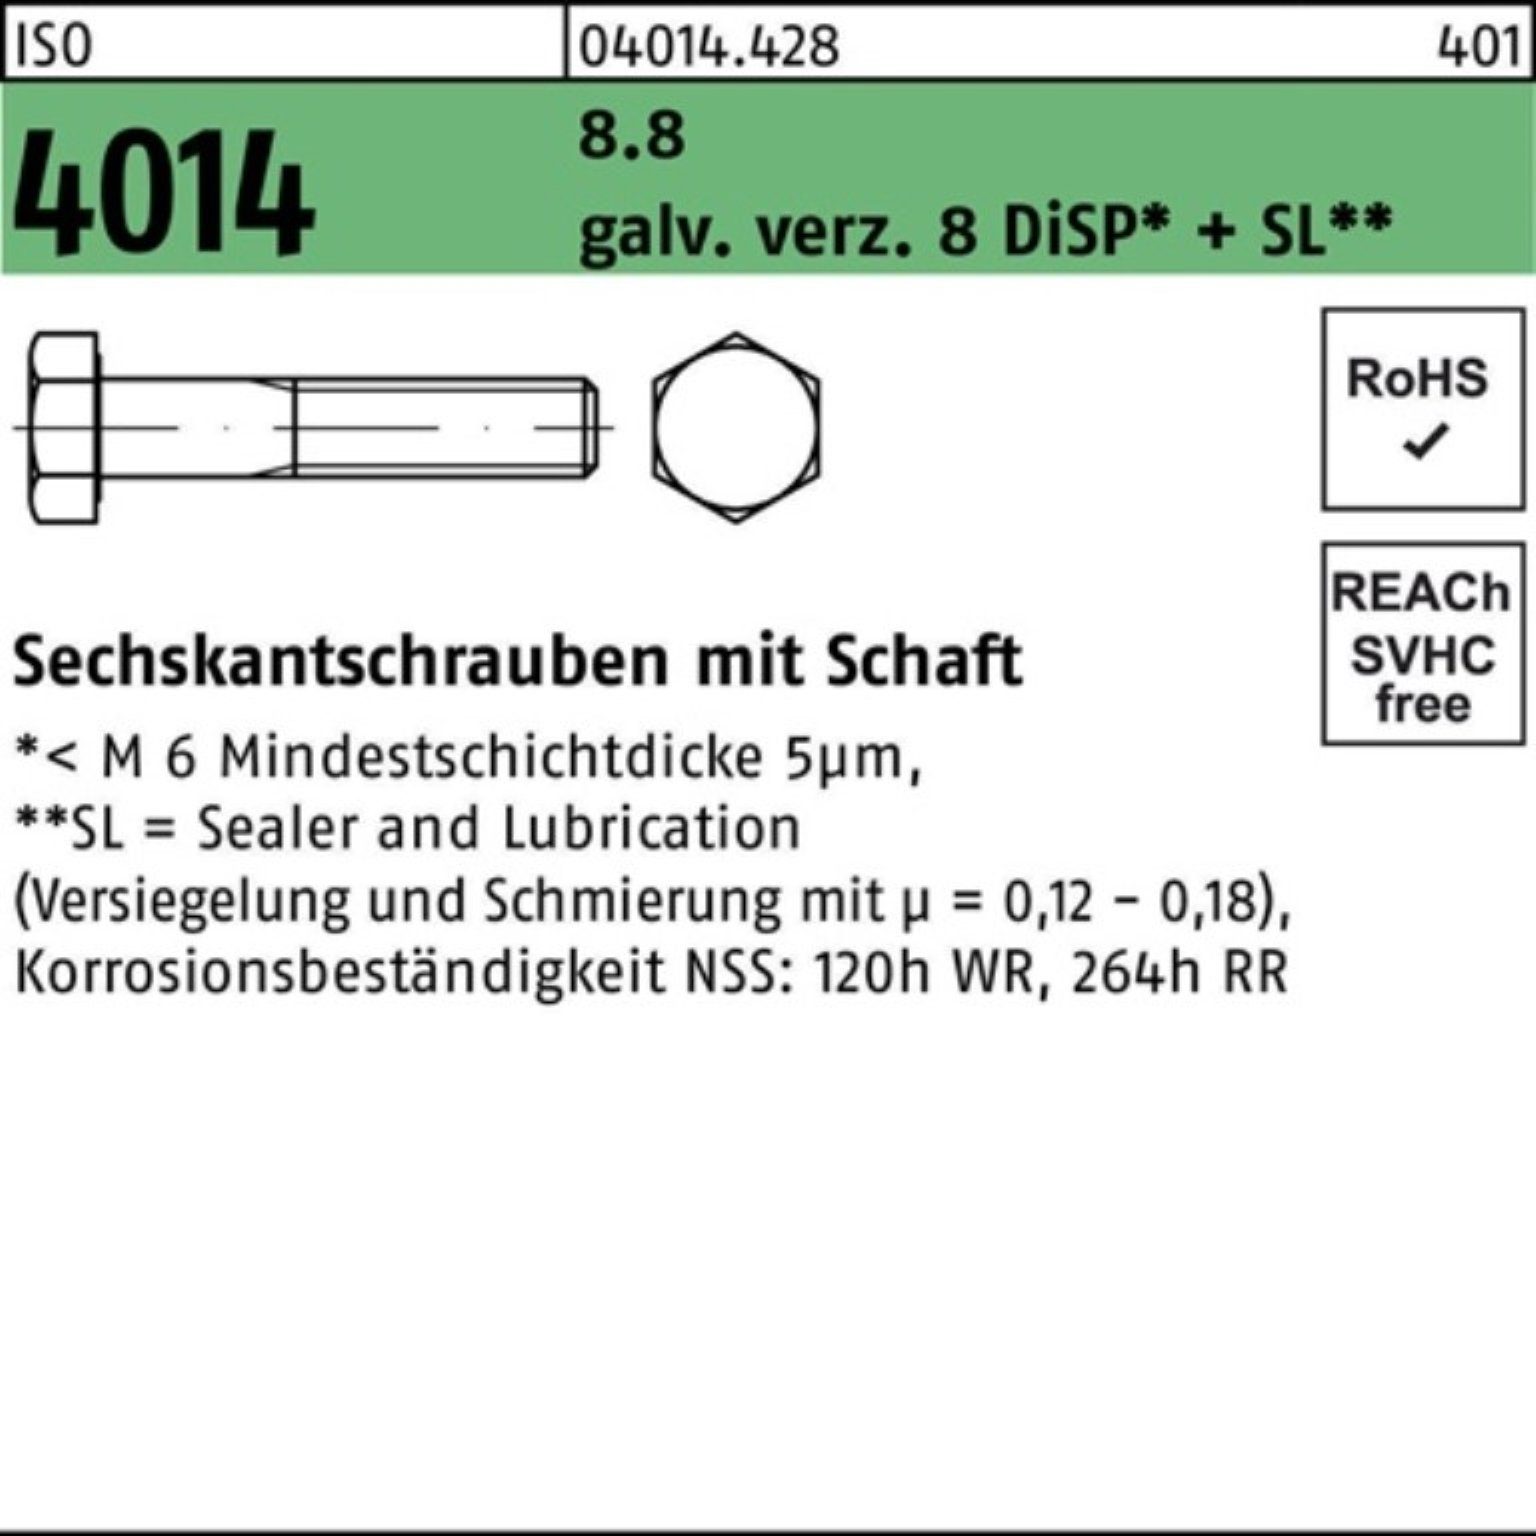 Bufab Sechskantschraube 100er Pack Sechskantschraube ISO 4014 Schaft M24x140 8.8 galv.verz. 8